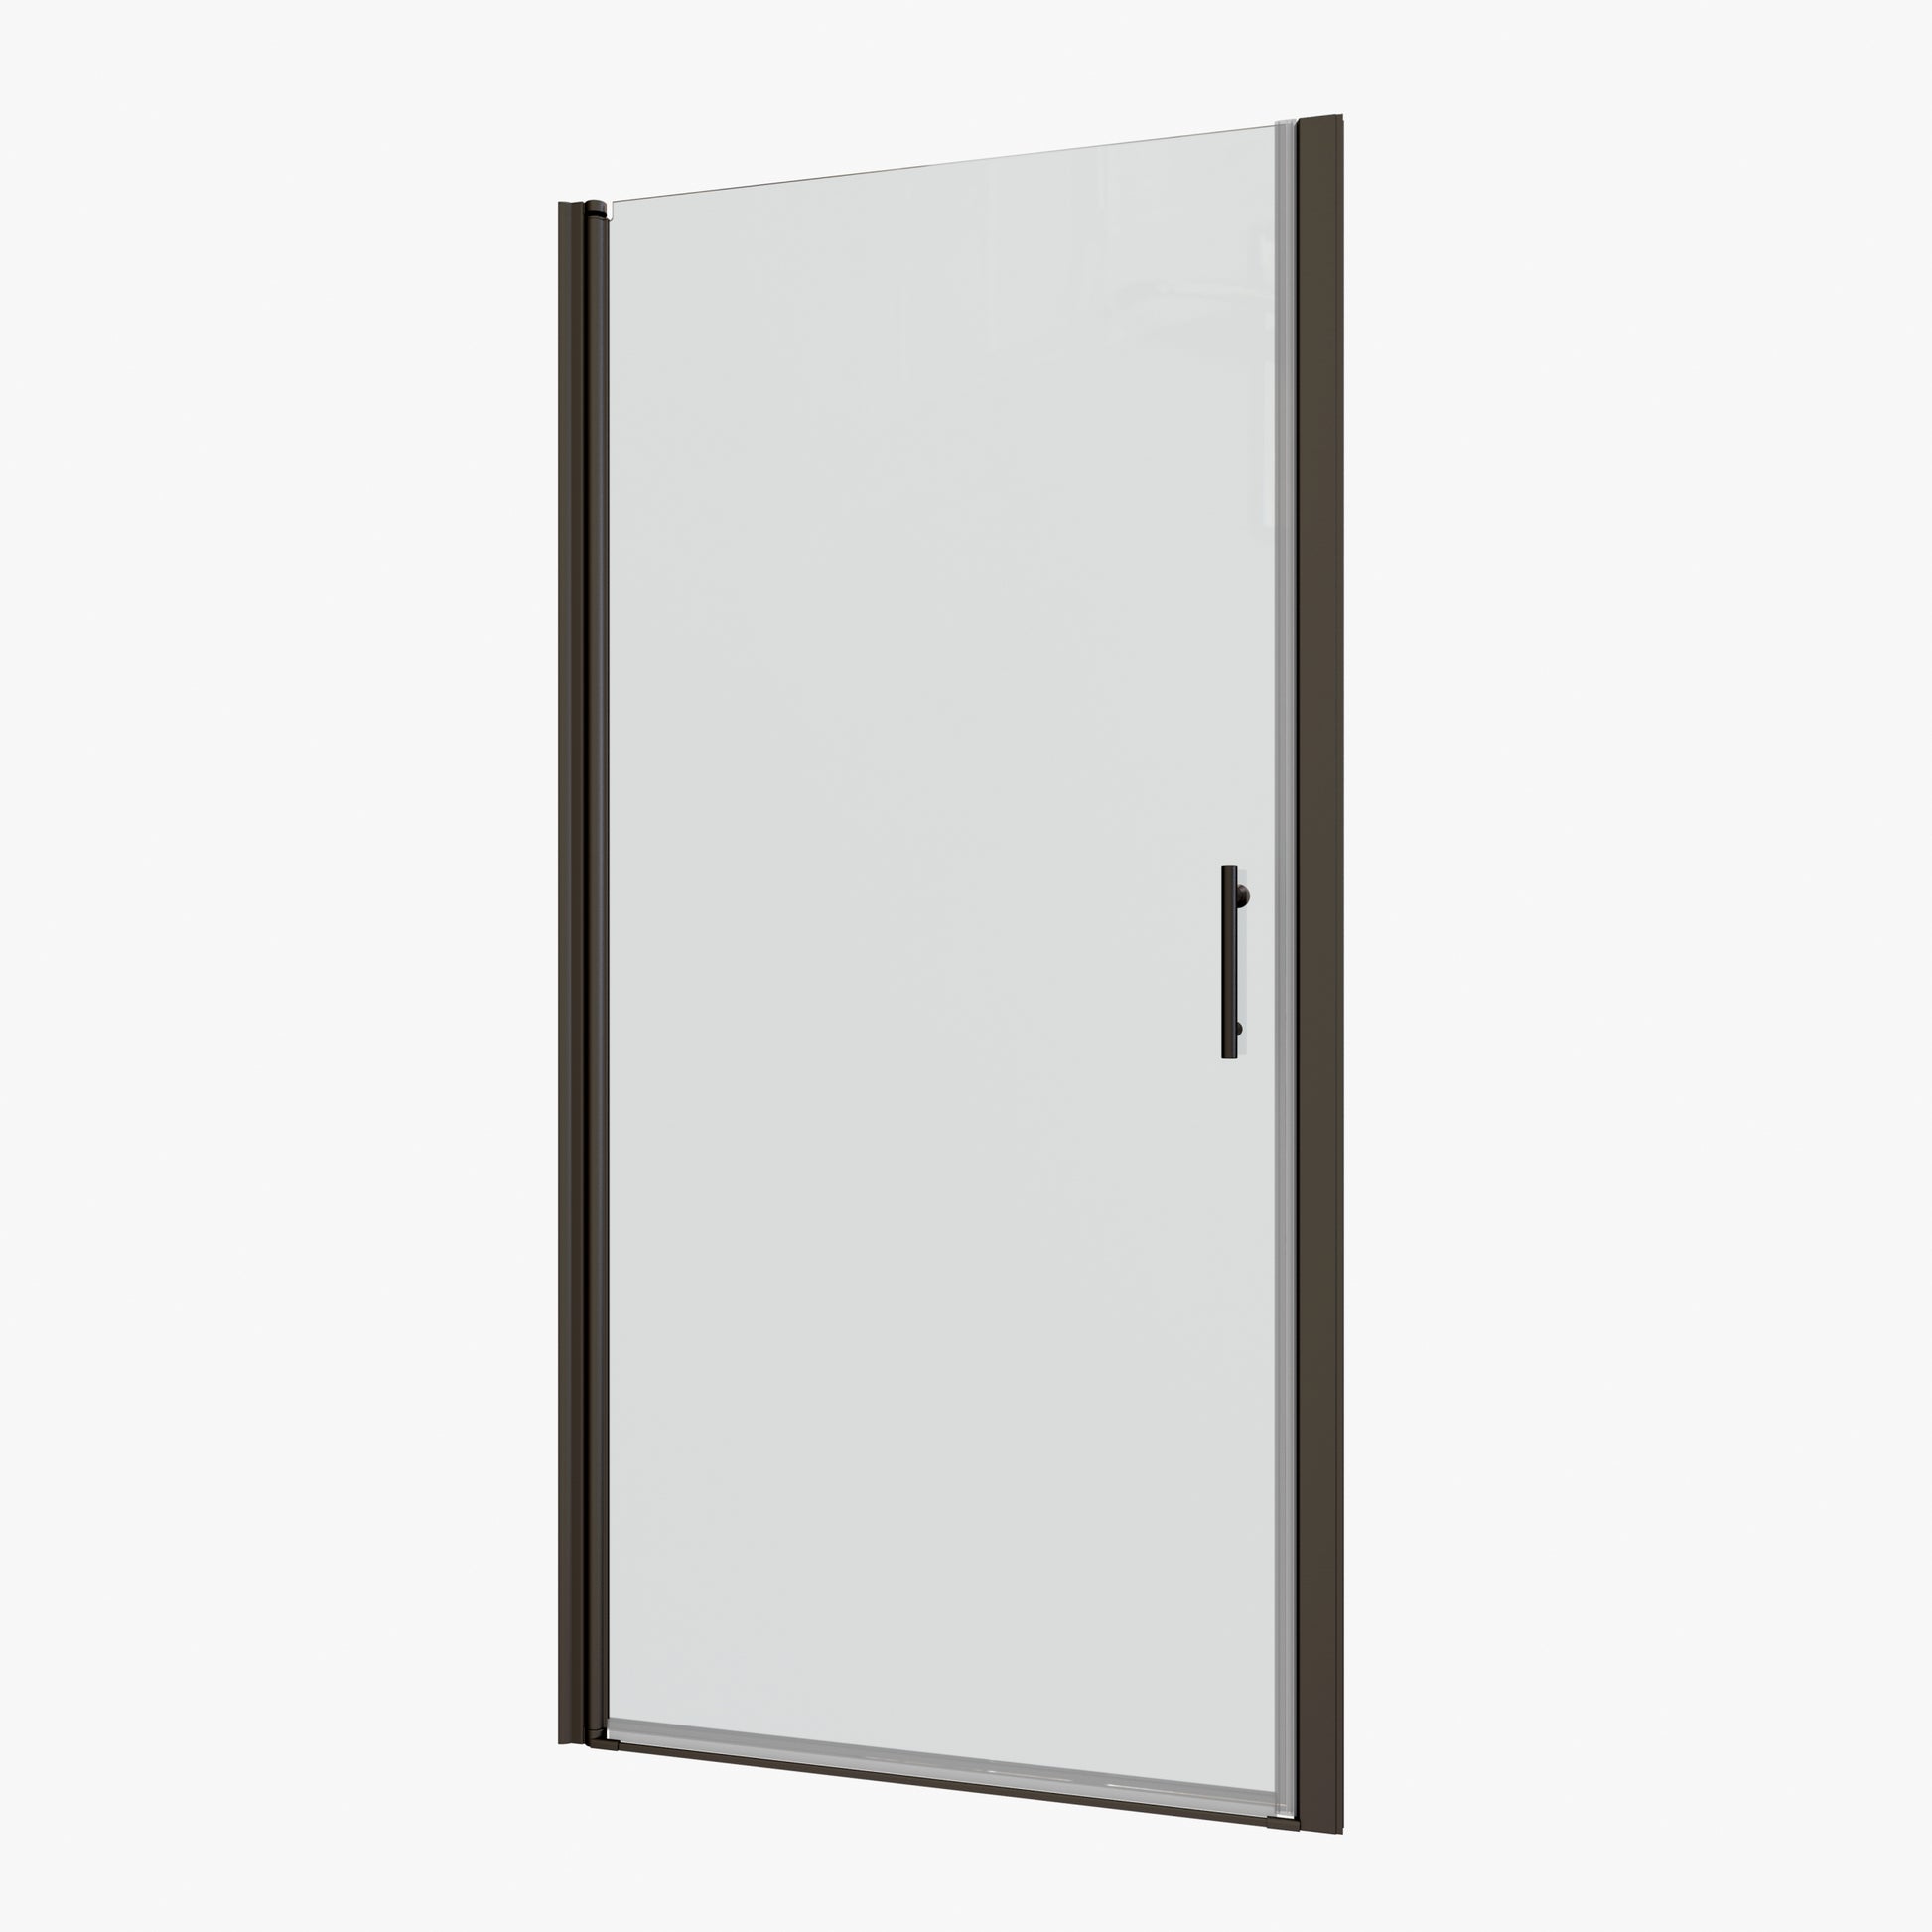 1 3 8" Adjustment,Universal Pivot Shower Door,